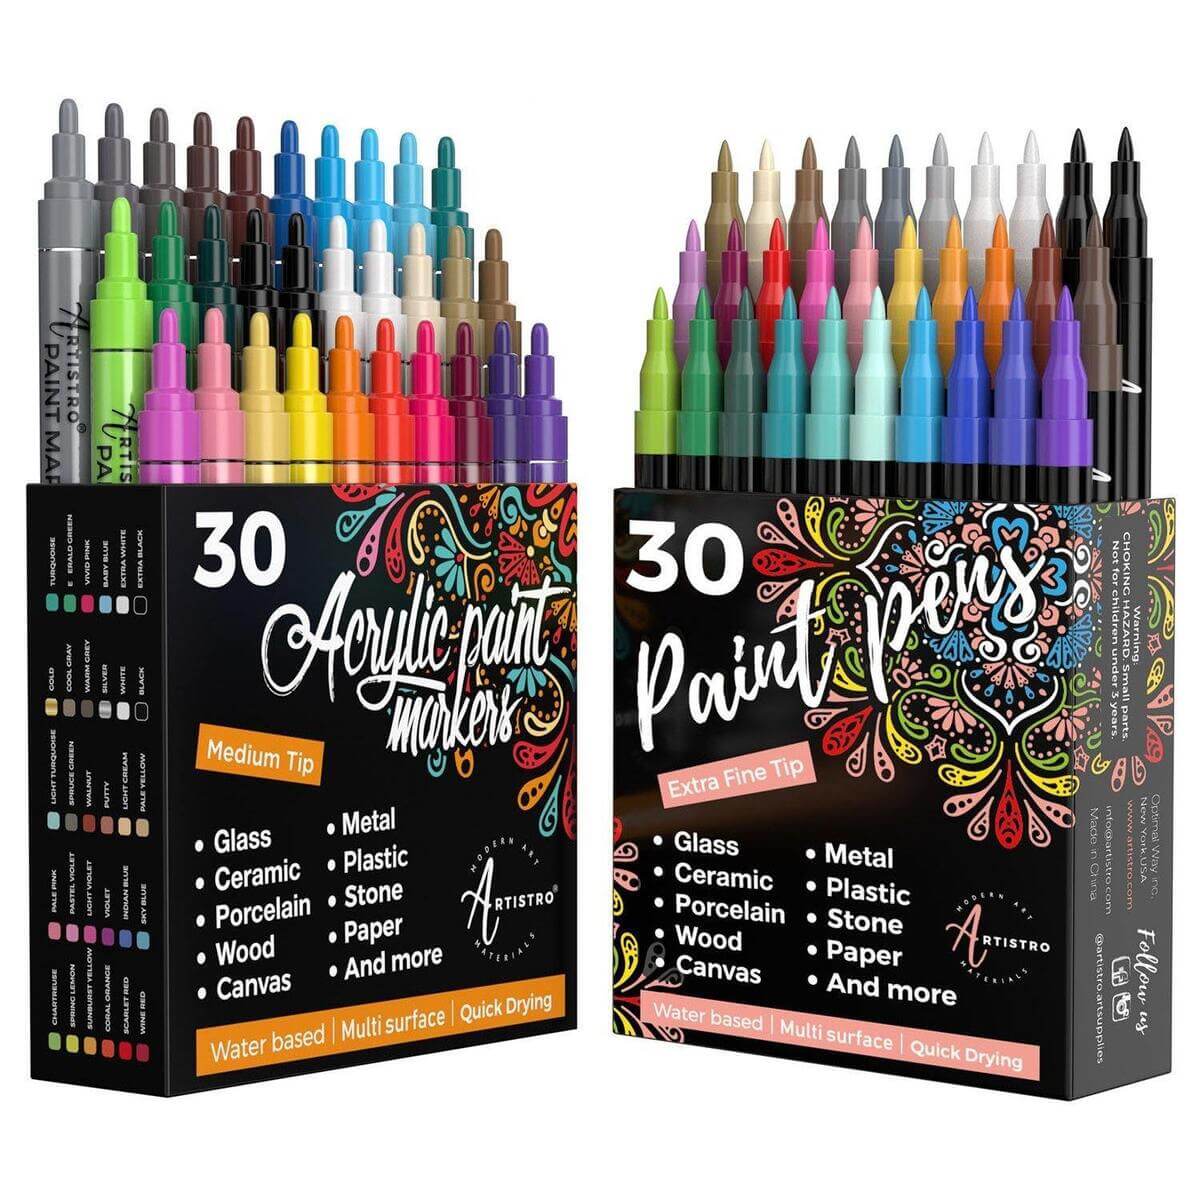 Studio Series Acrylic Paint Marker Set (12-piece set) – Q.E.D. Astoria